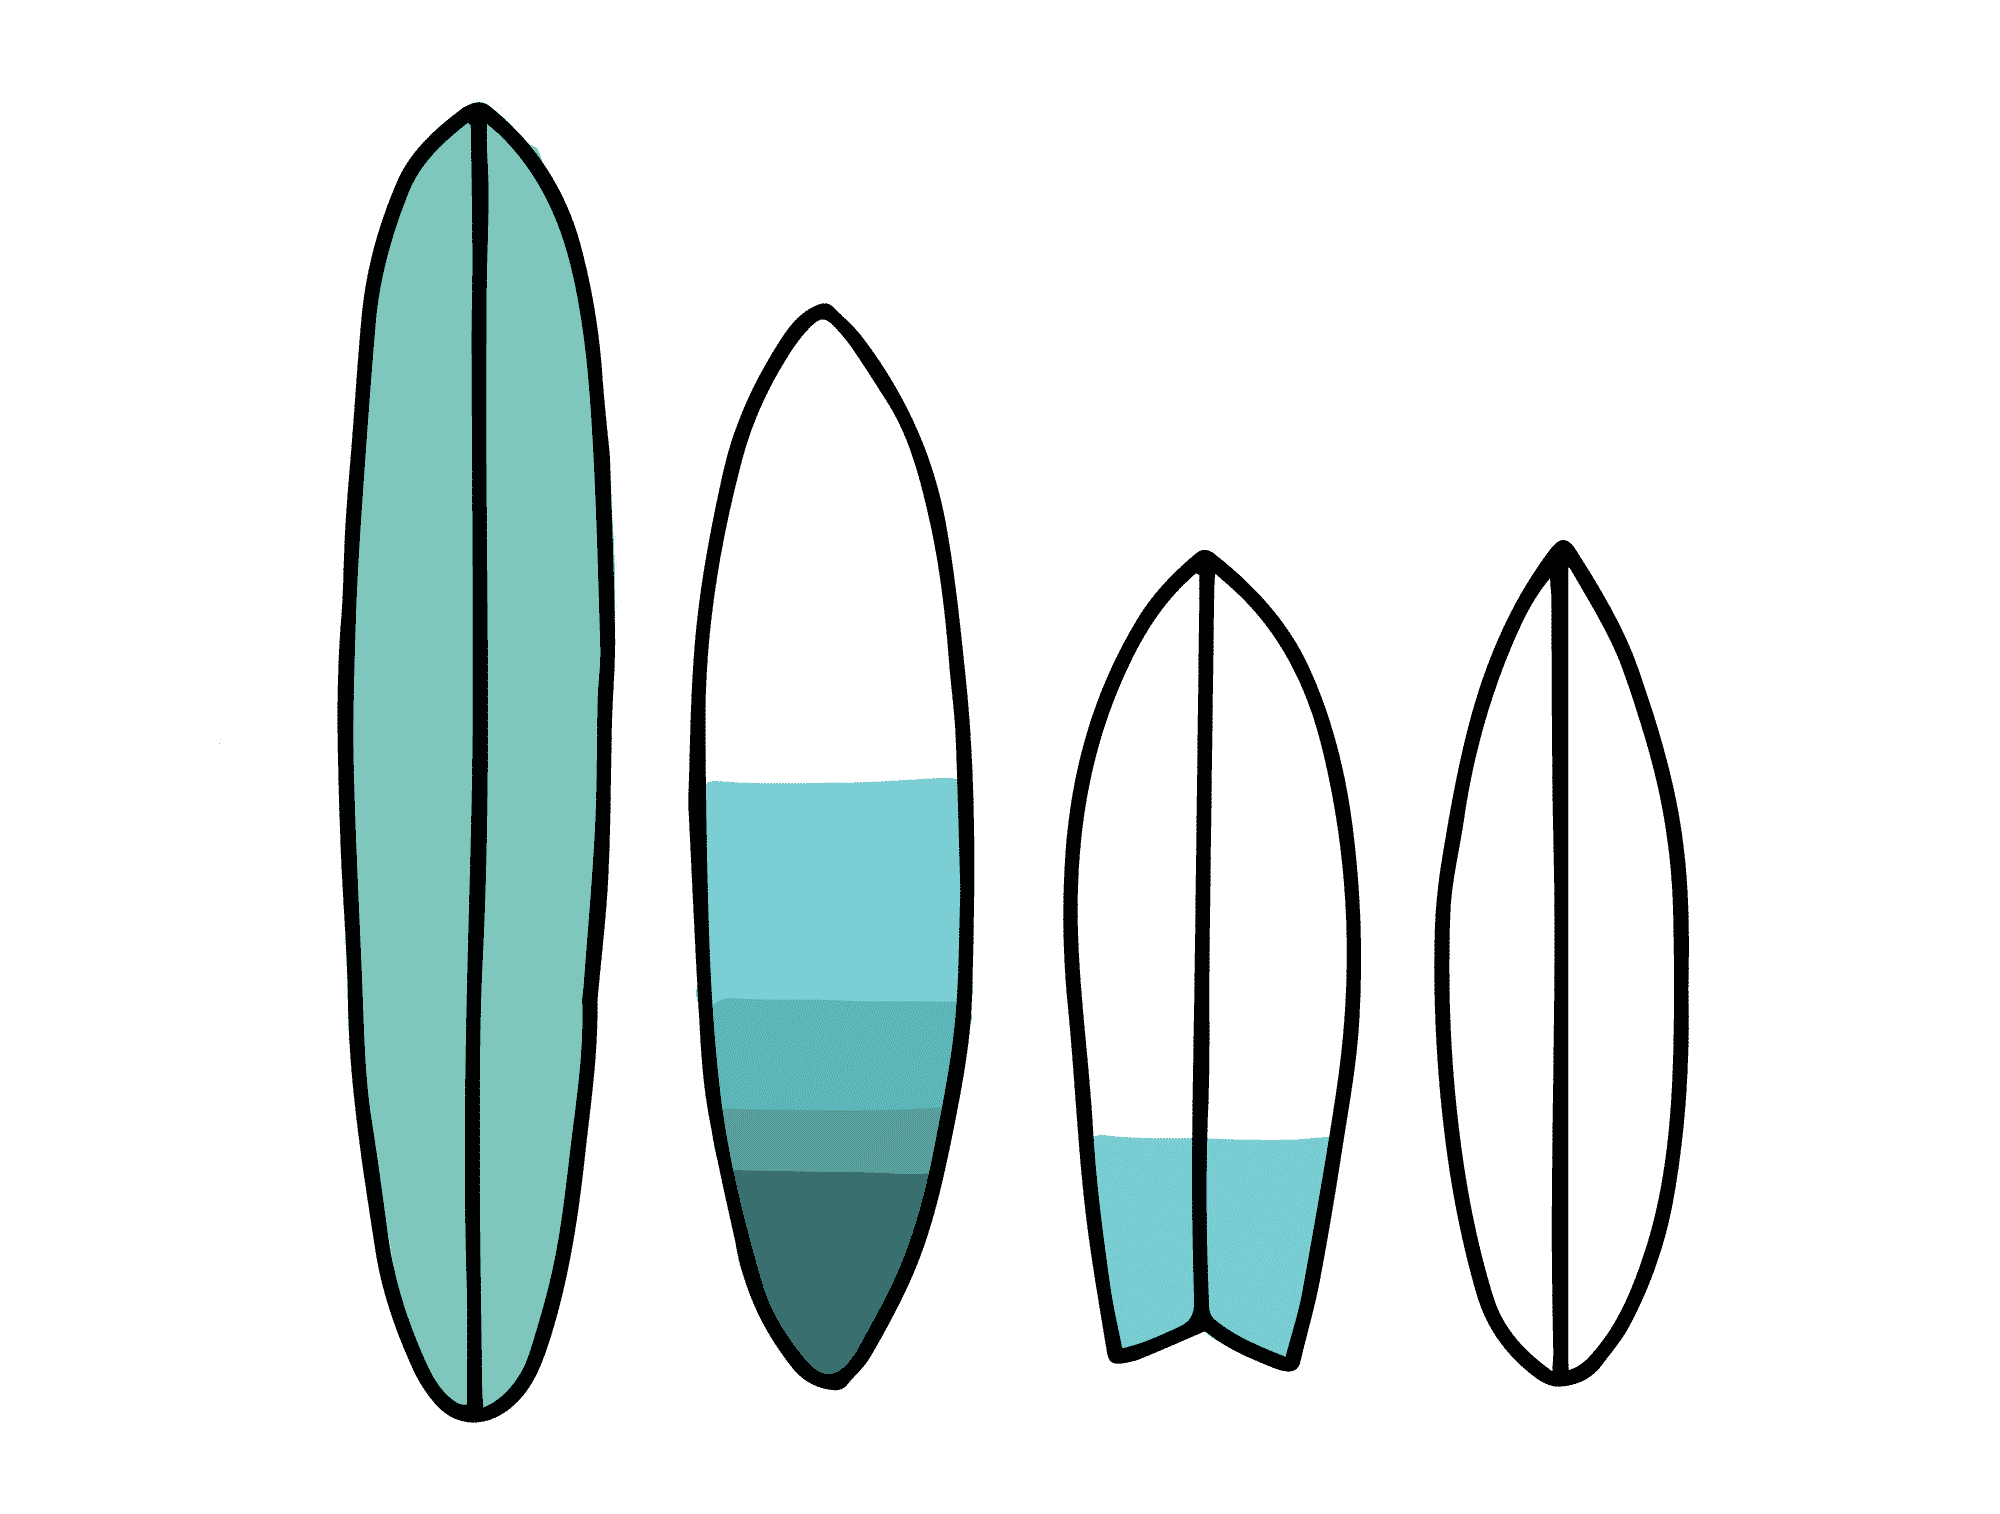 Comment lire les côtes d'une planche de surf ?